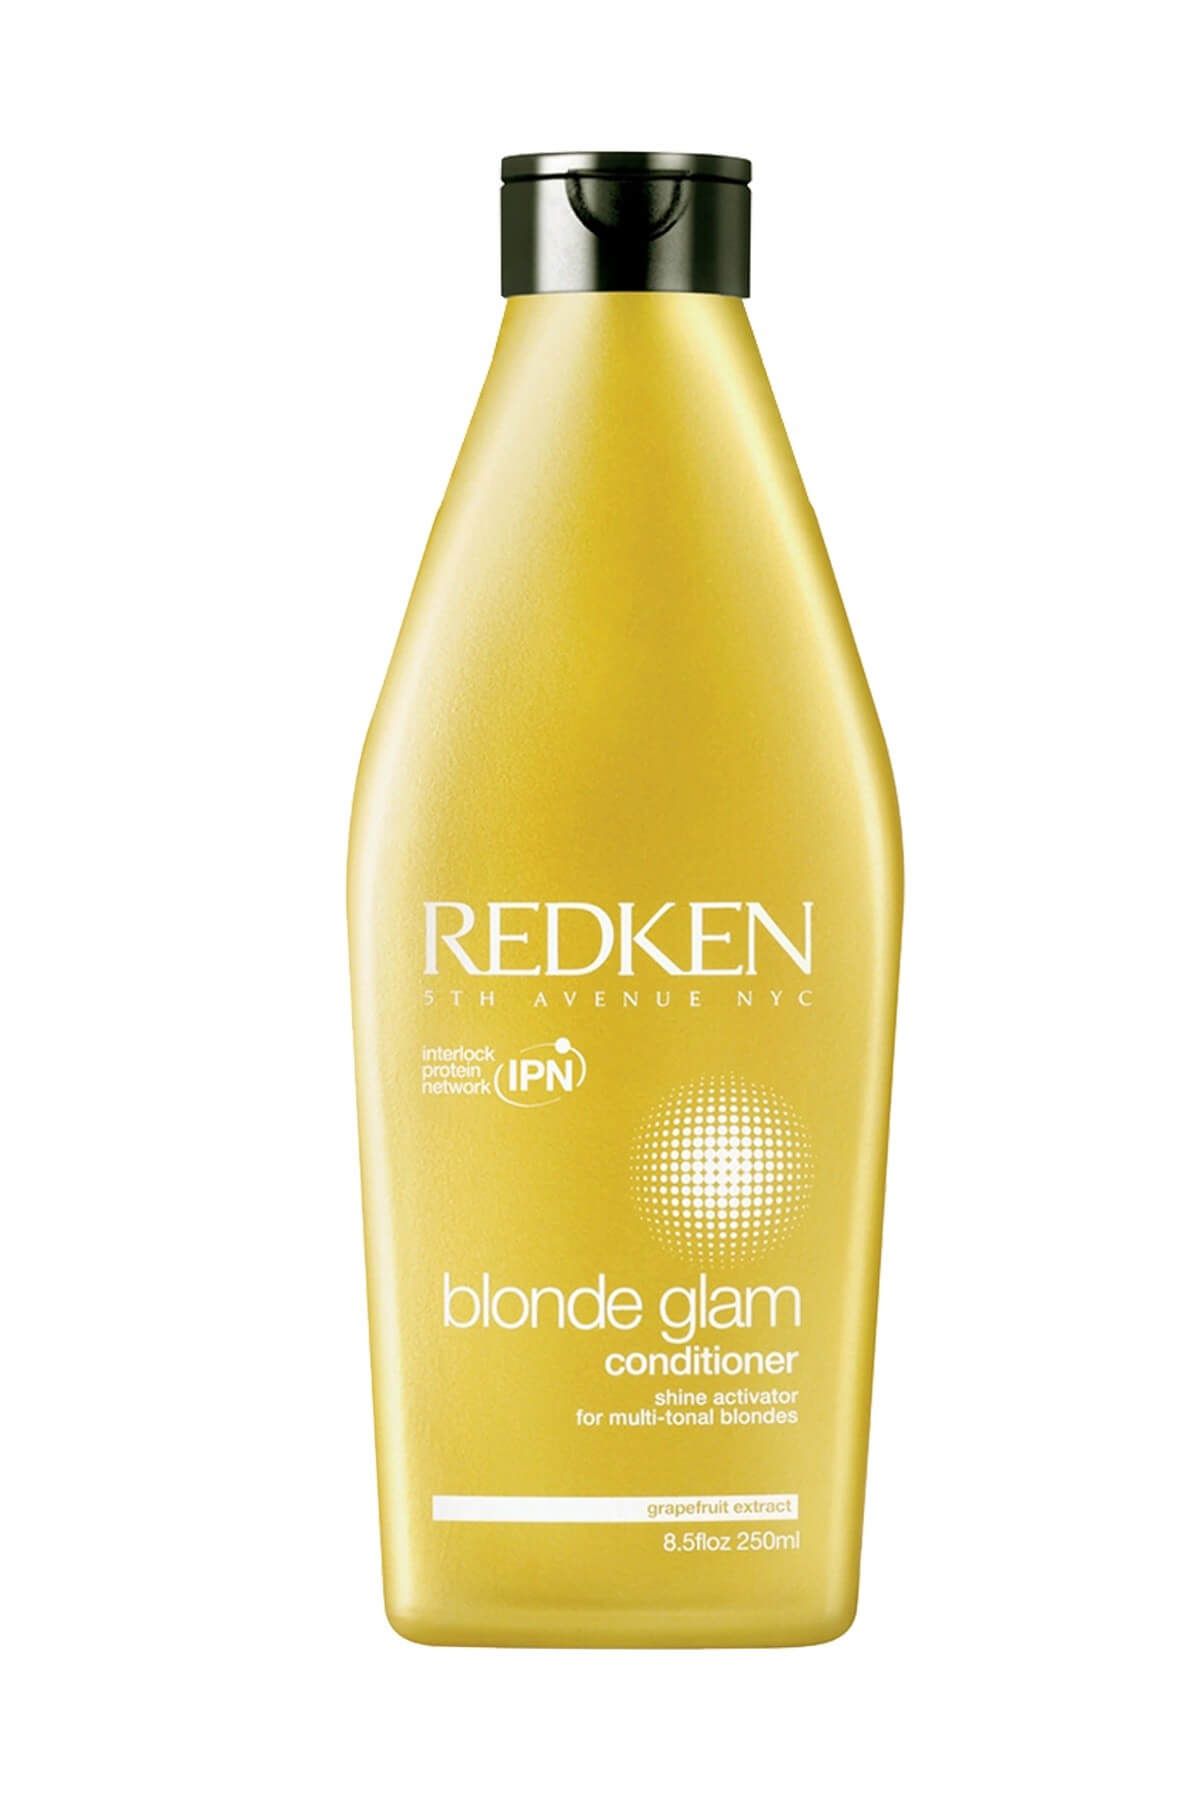 REDKEN Sarı Saçlar için Canlandırıcı Saç Kremi 300 ml - Blonde Glam Conditioner  884486043962